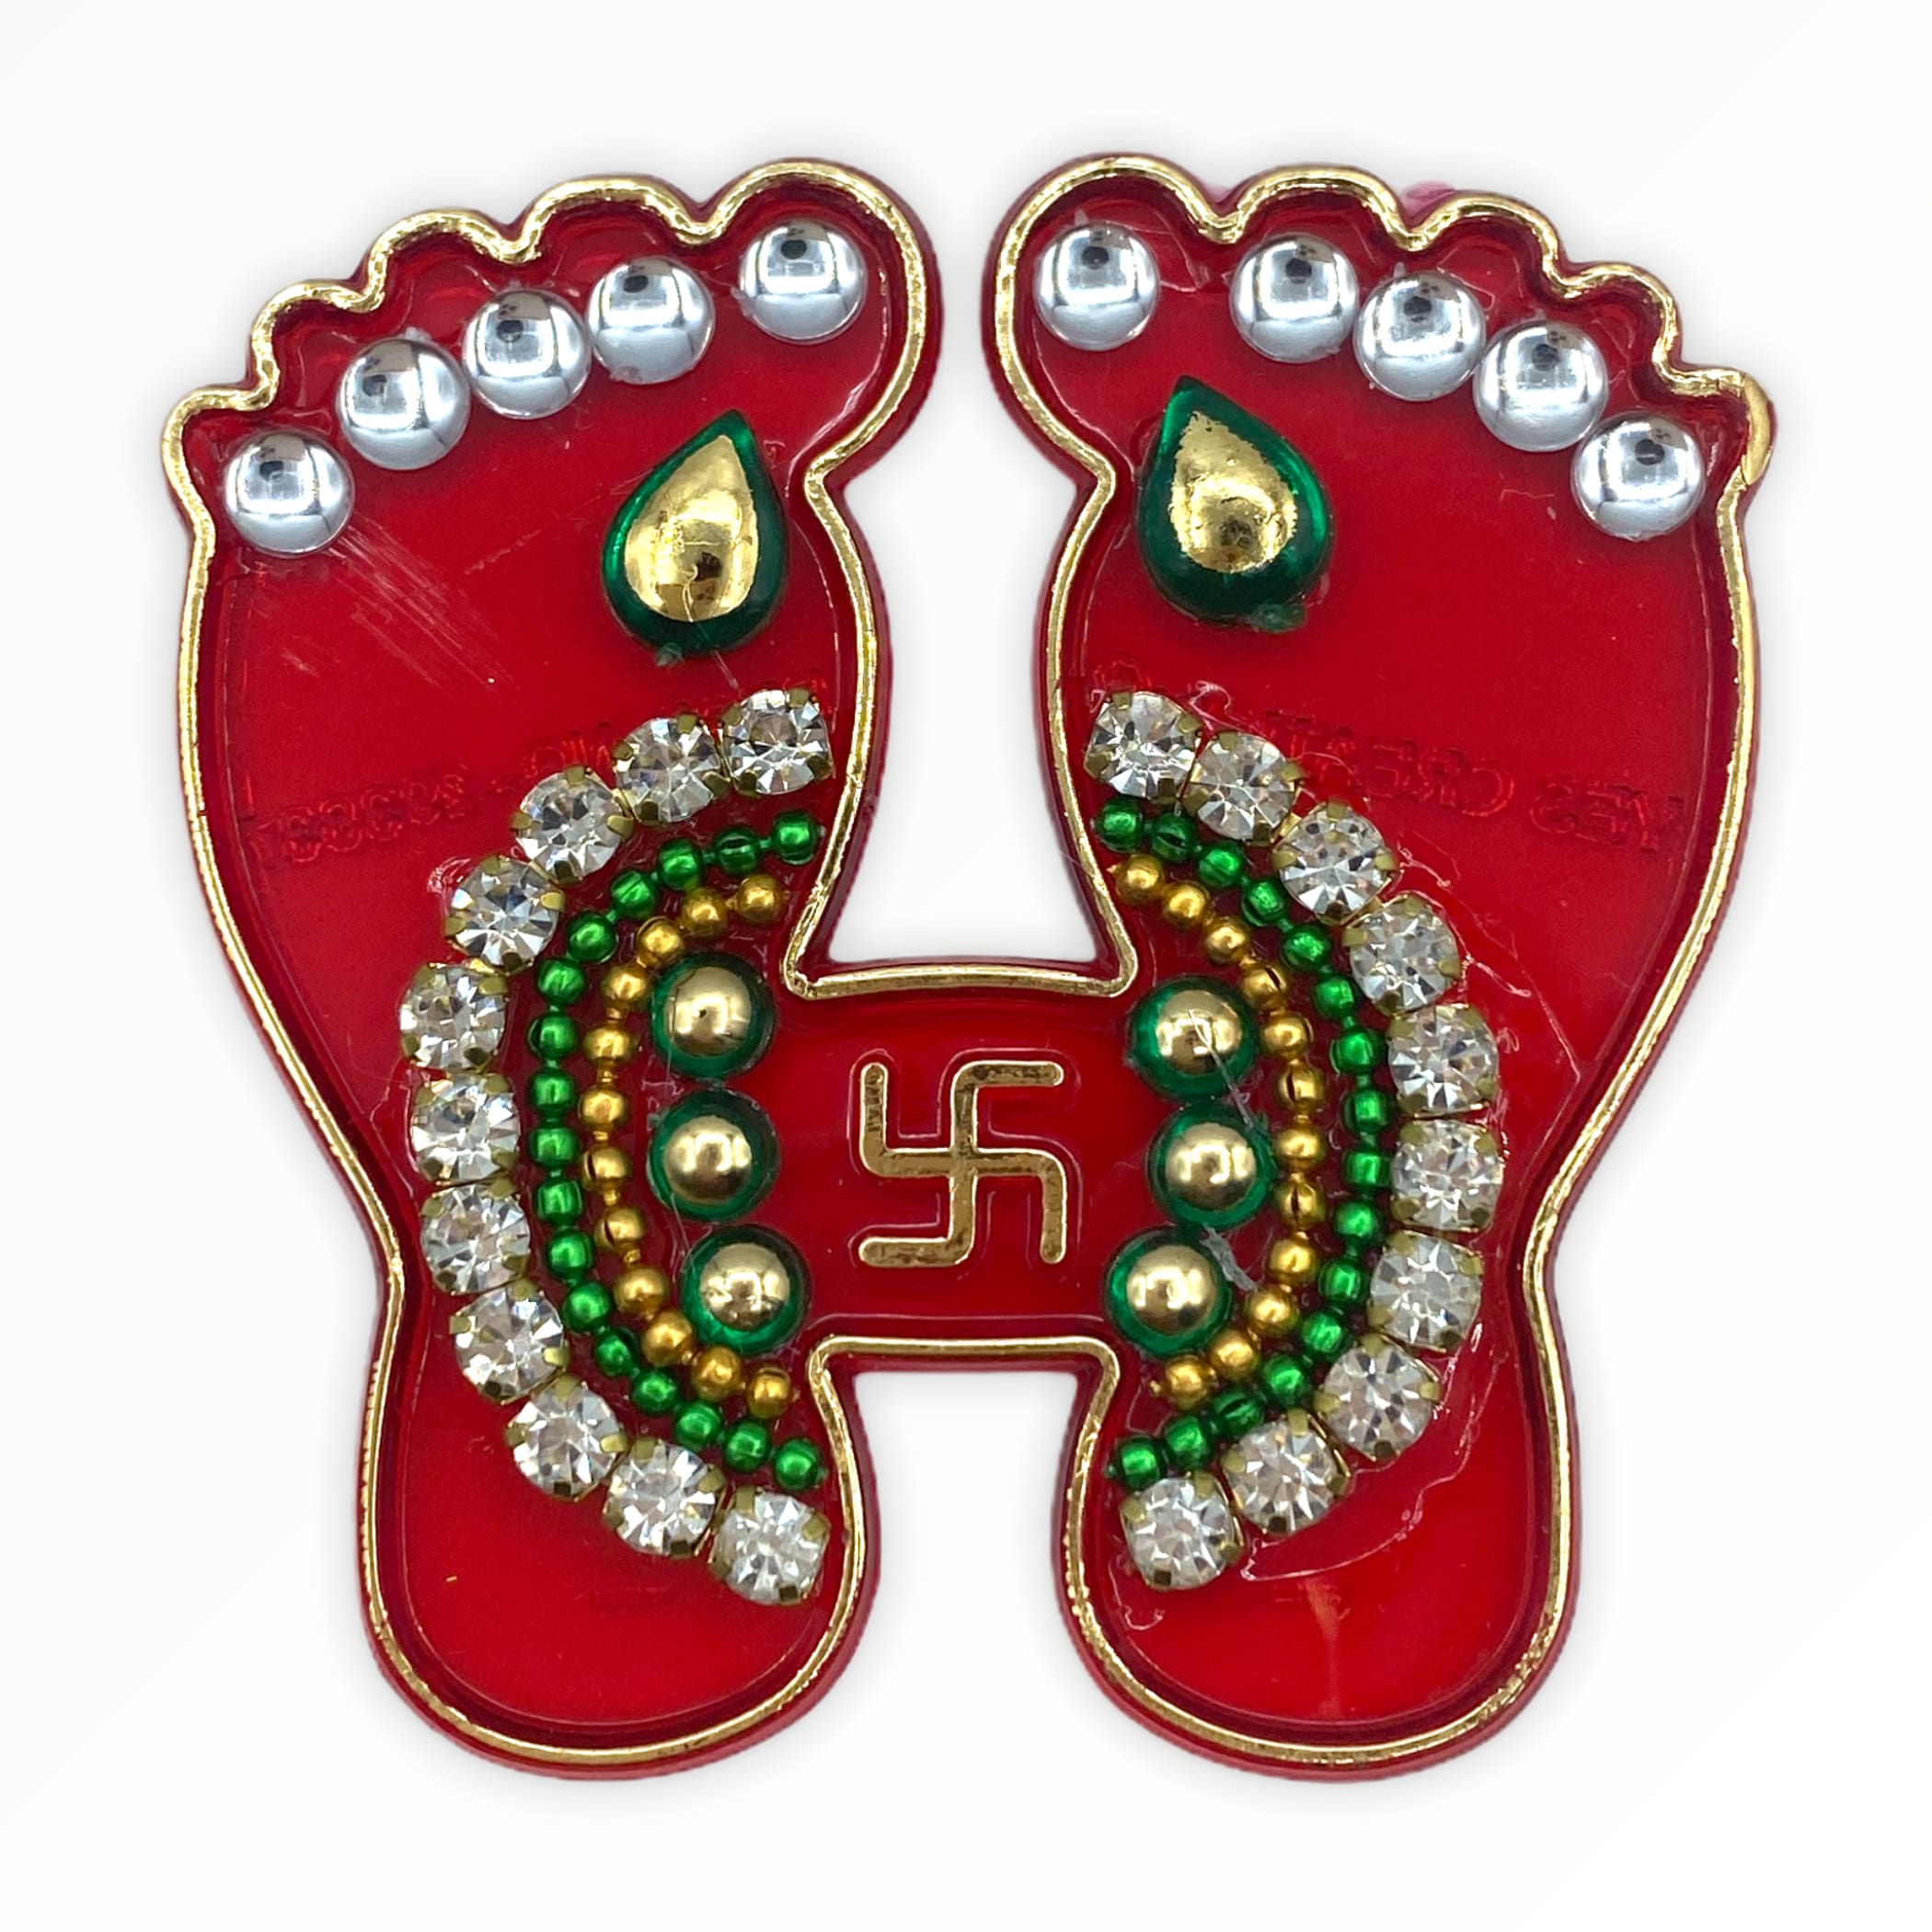 Acrylic Laxmi Feet Vara Lakshmi Pagh Hindu Diwali Decor